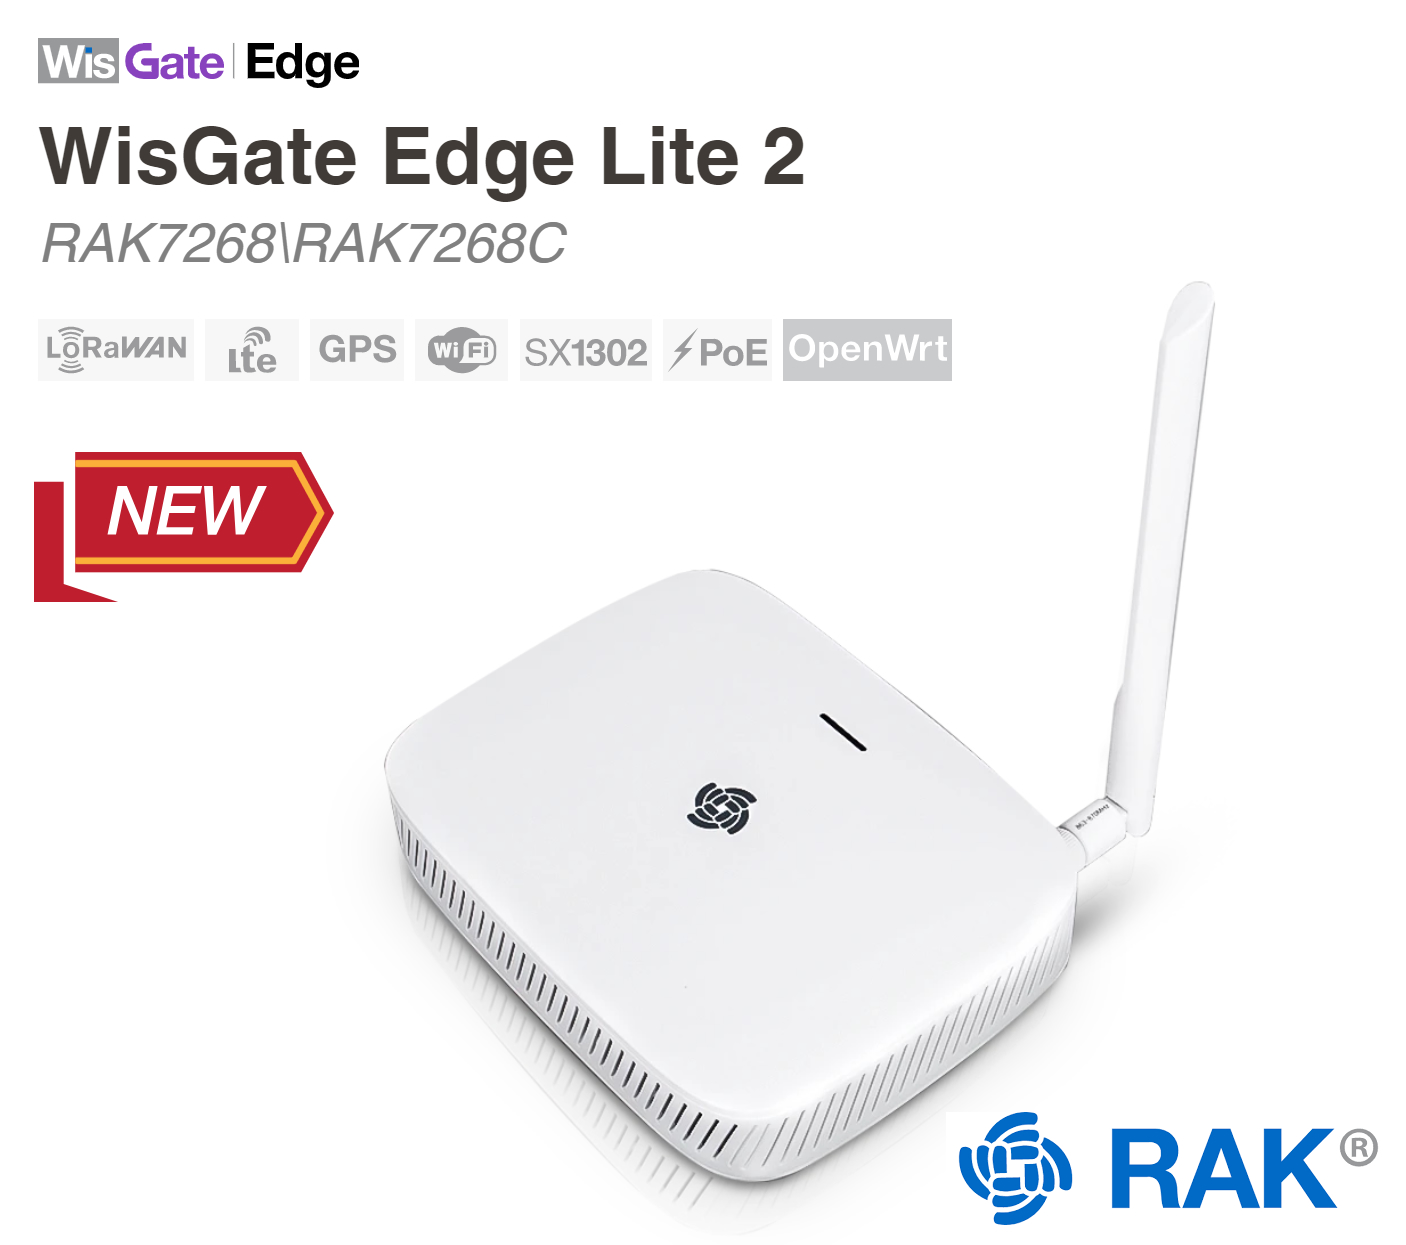 RAK Wireless announce WisGate Edge Lite 2 LoRa Gateway